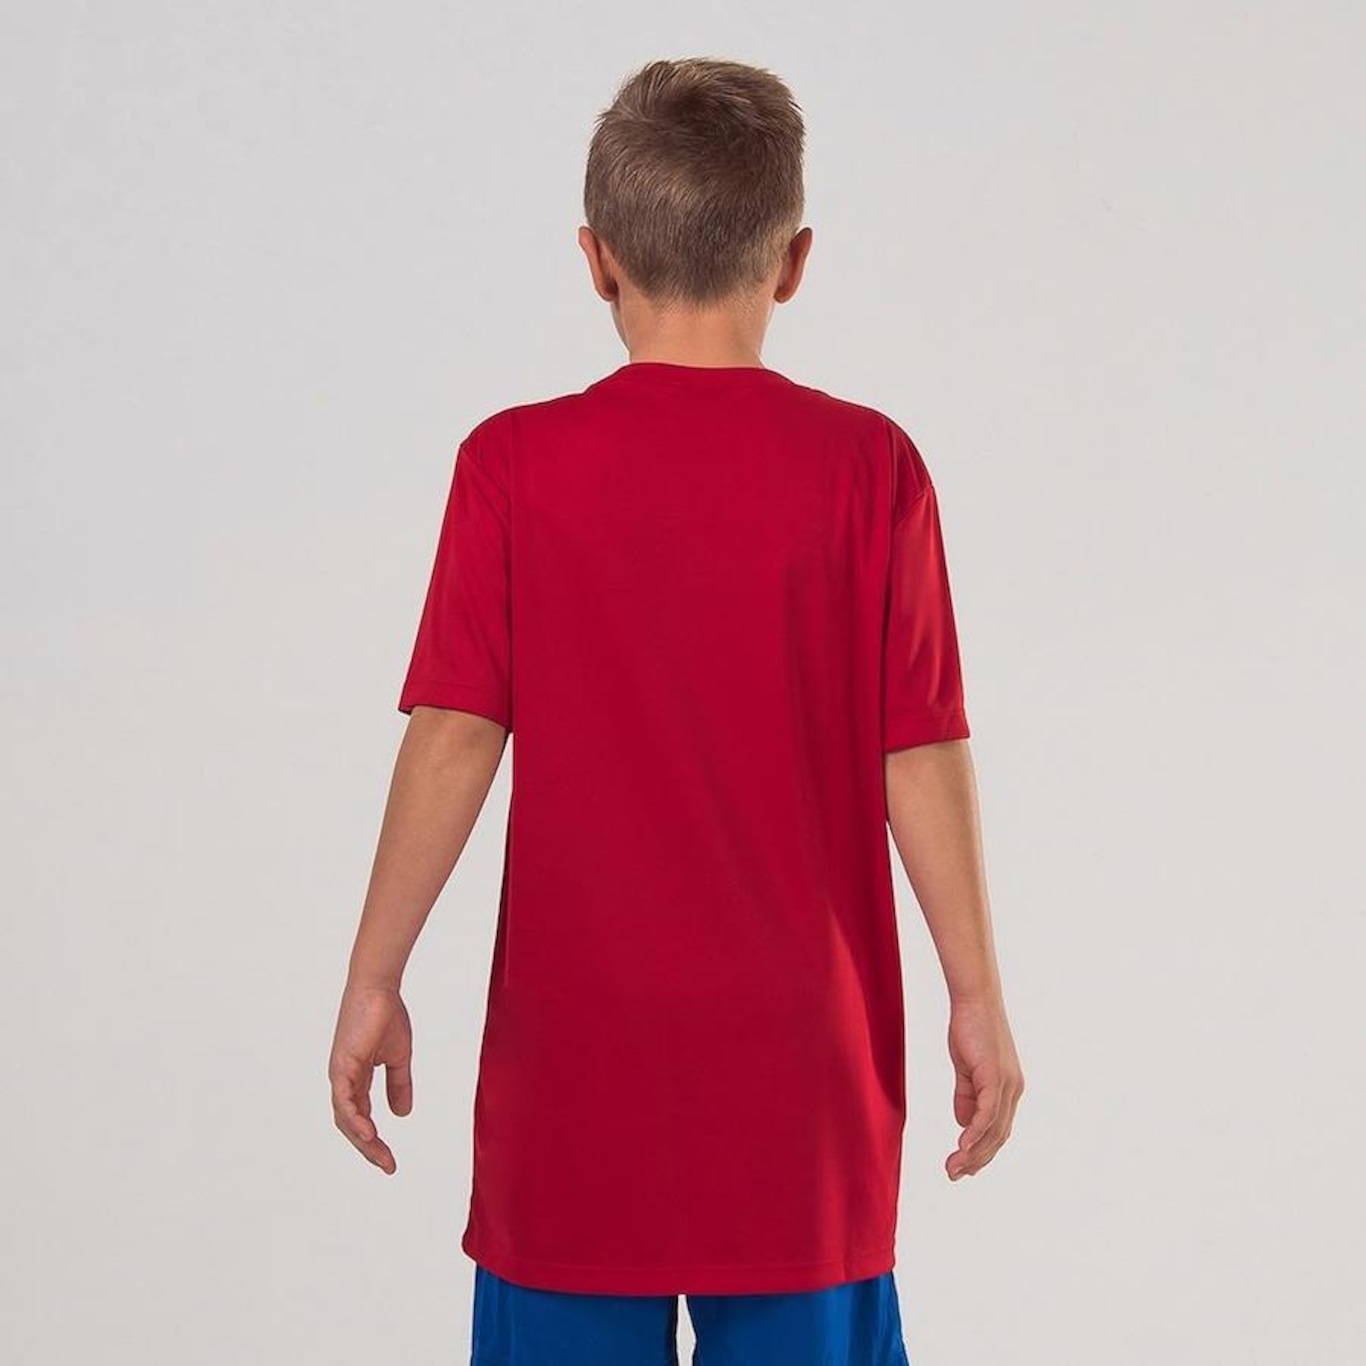 Camiseta Infantil Umbro Twr Striker - Foto 4